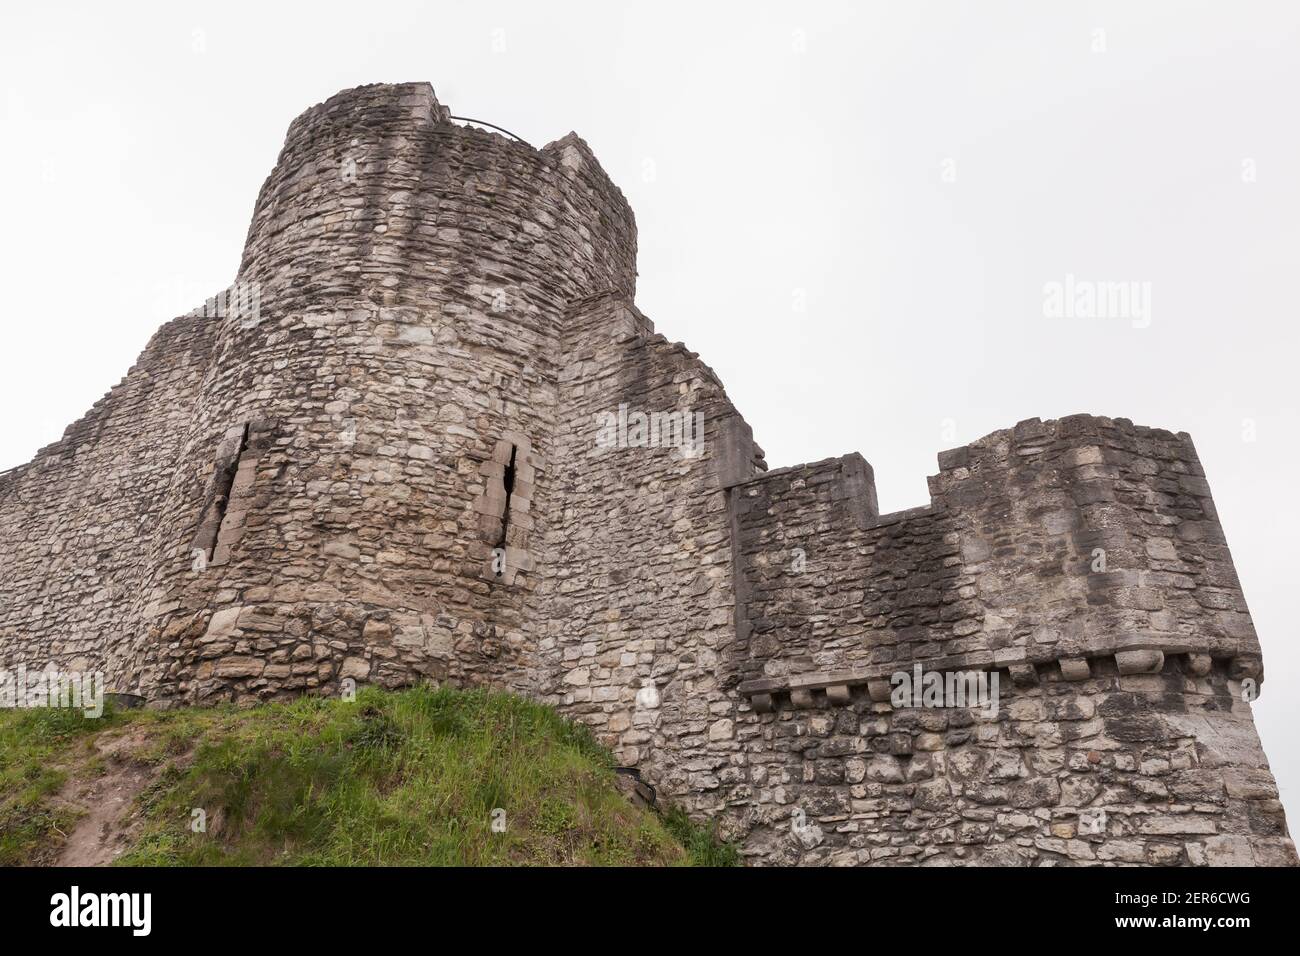 Torre de piedra en ruinas y murallas de la ciudad de Southampton, es una secuencia de estructuras defensivas construidas alrededor de la ciudad en el sur de Inglaterra Foto de stock